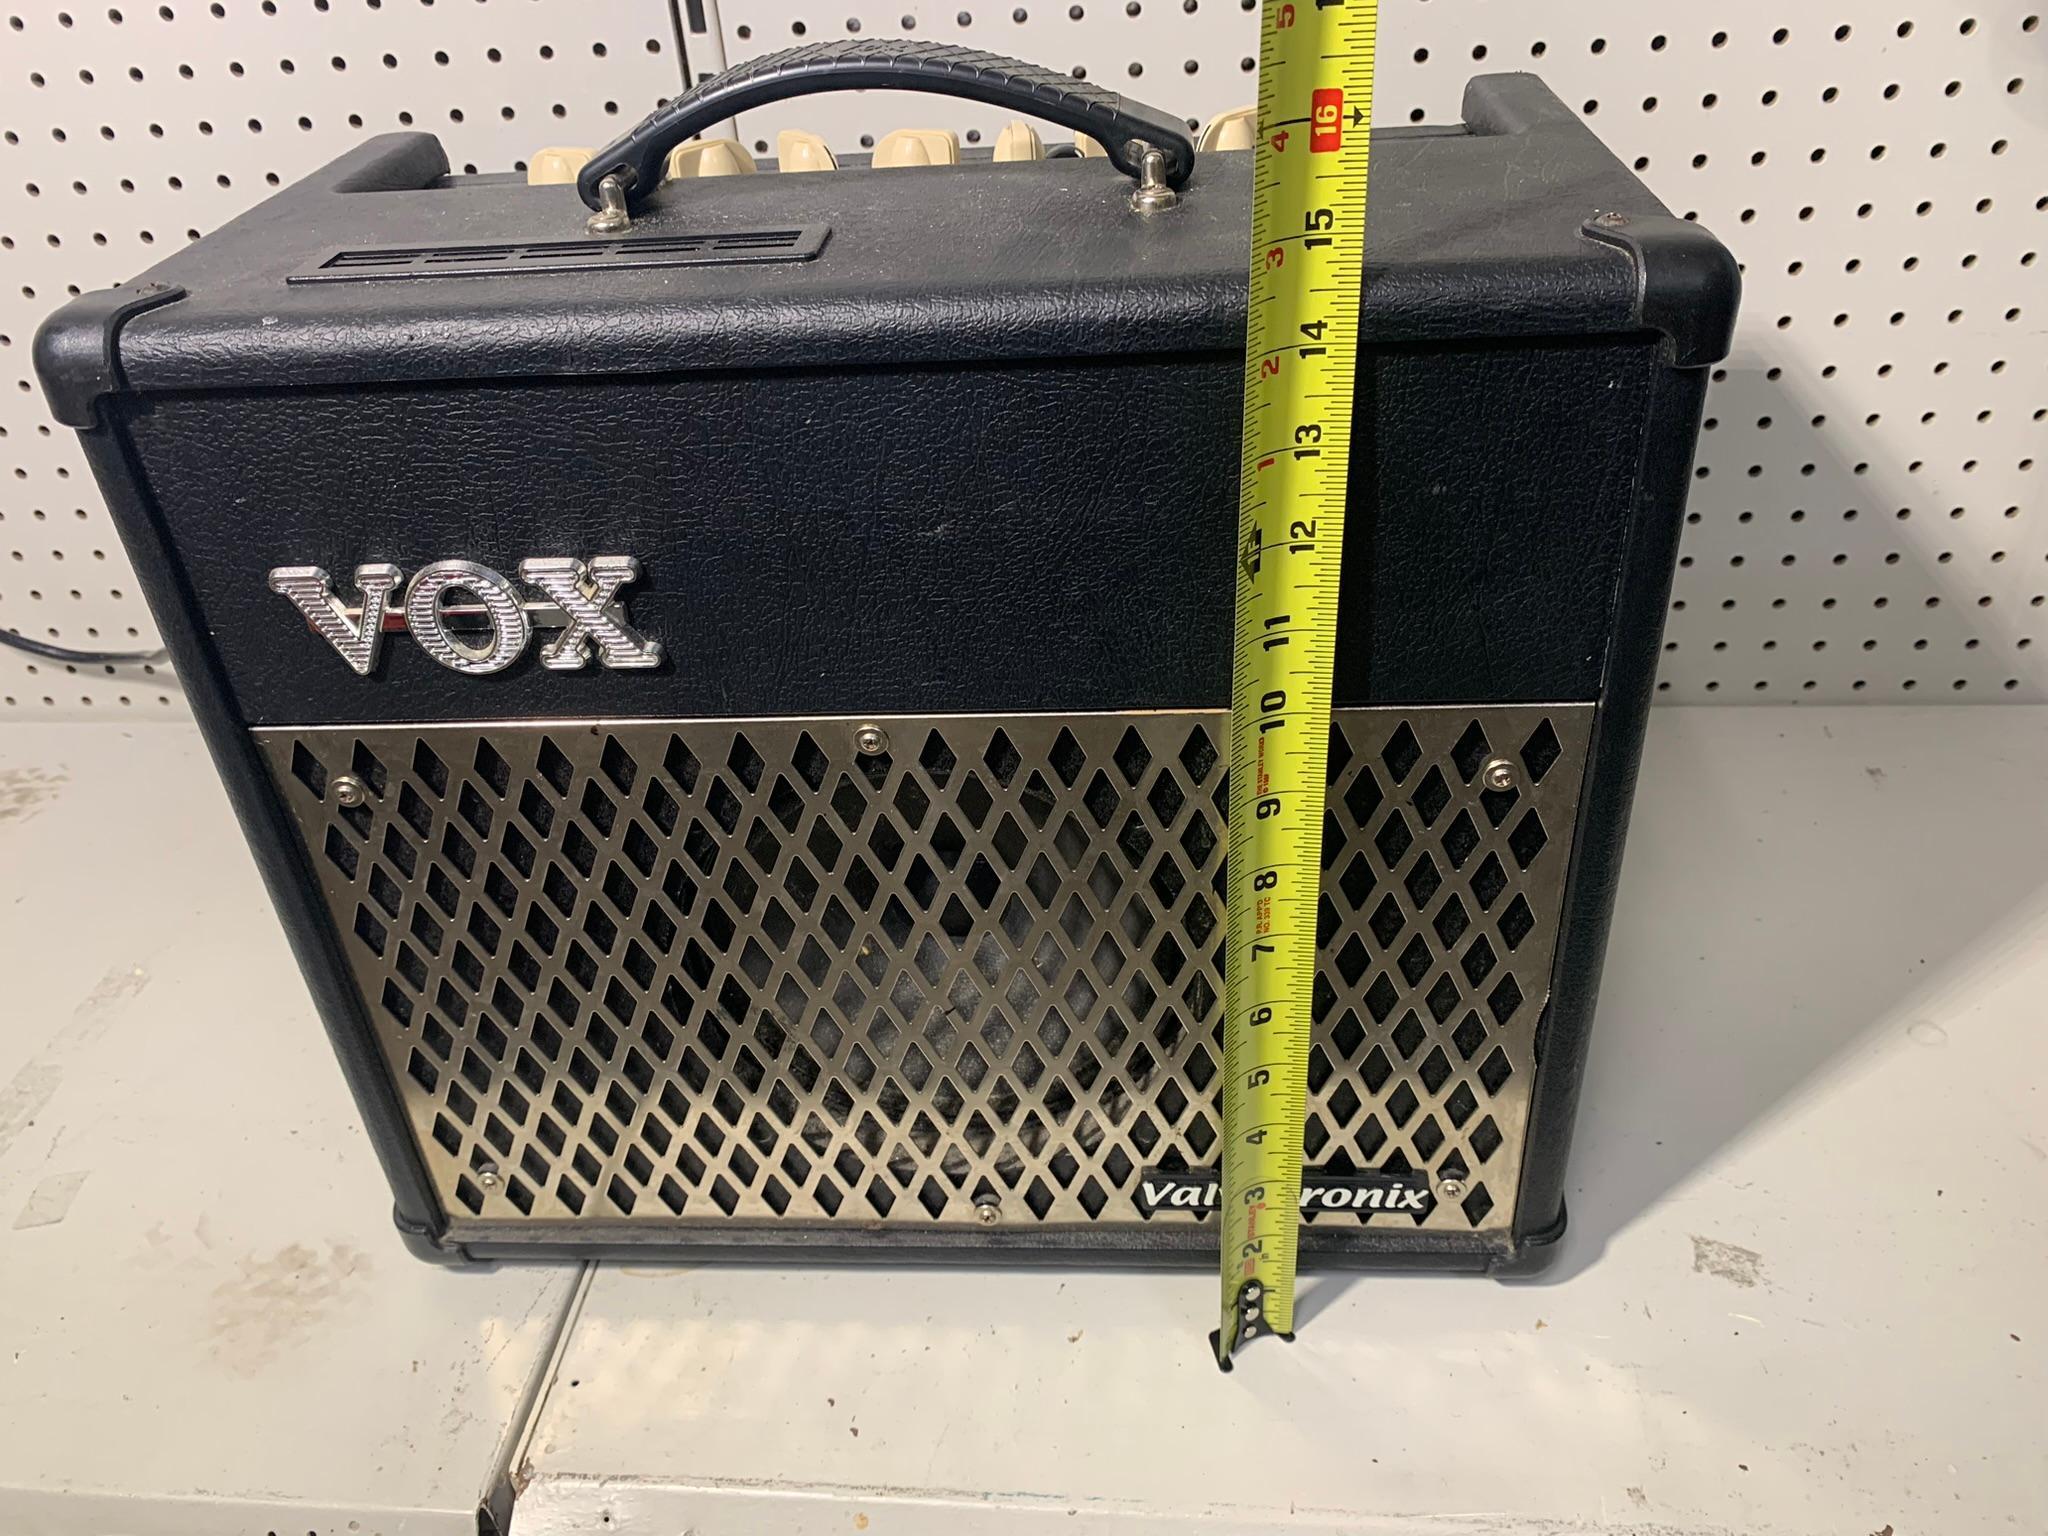 VOX VT15 Amp